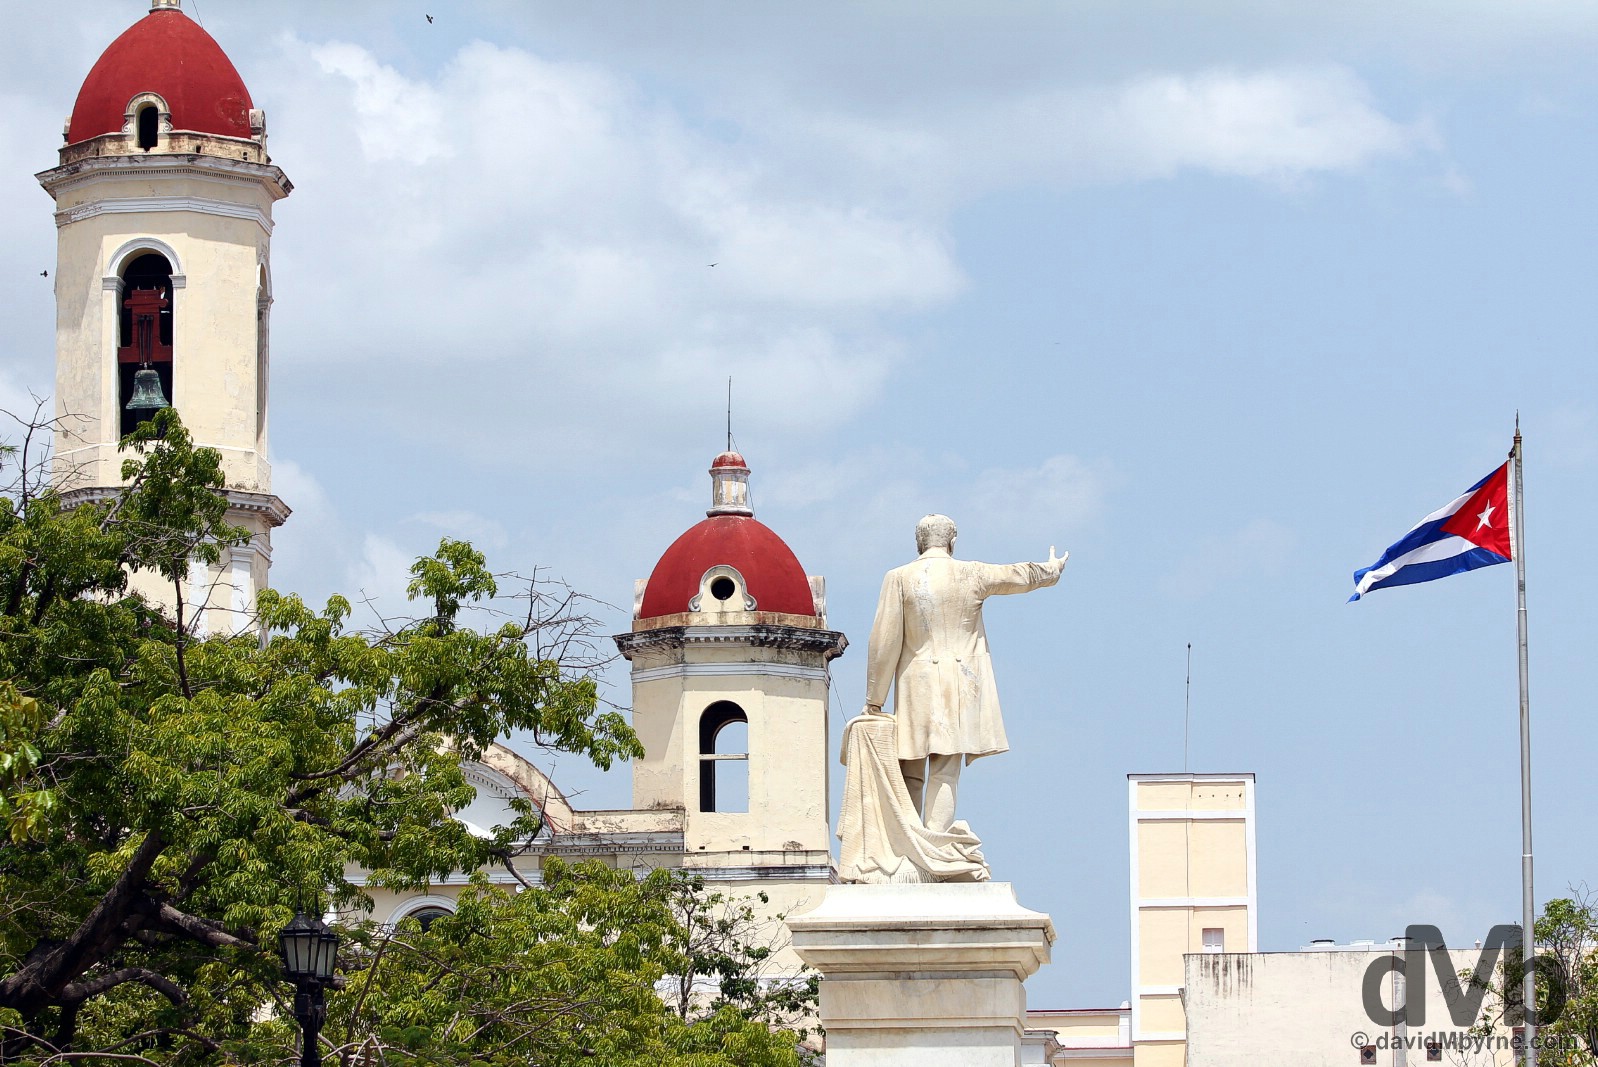 Parque Jose Marti, Cienfuegos, Cuba. May 8, 2015.